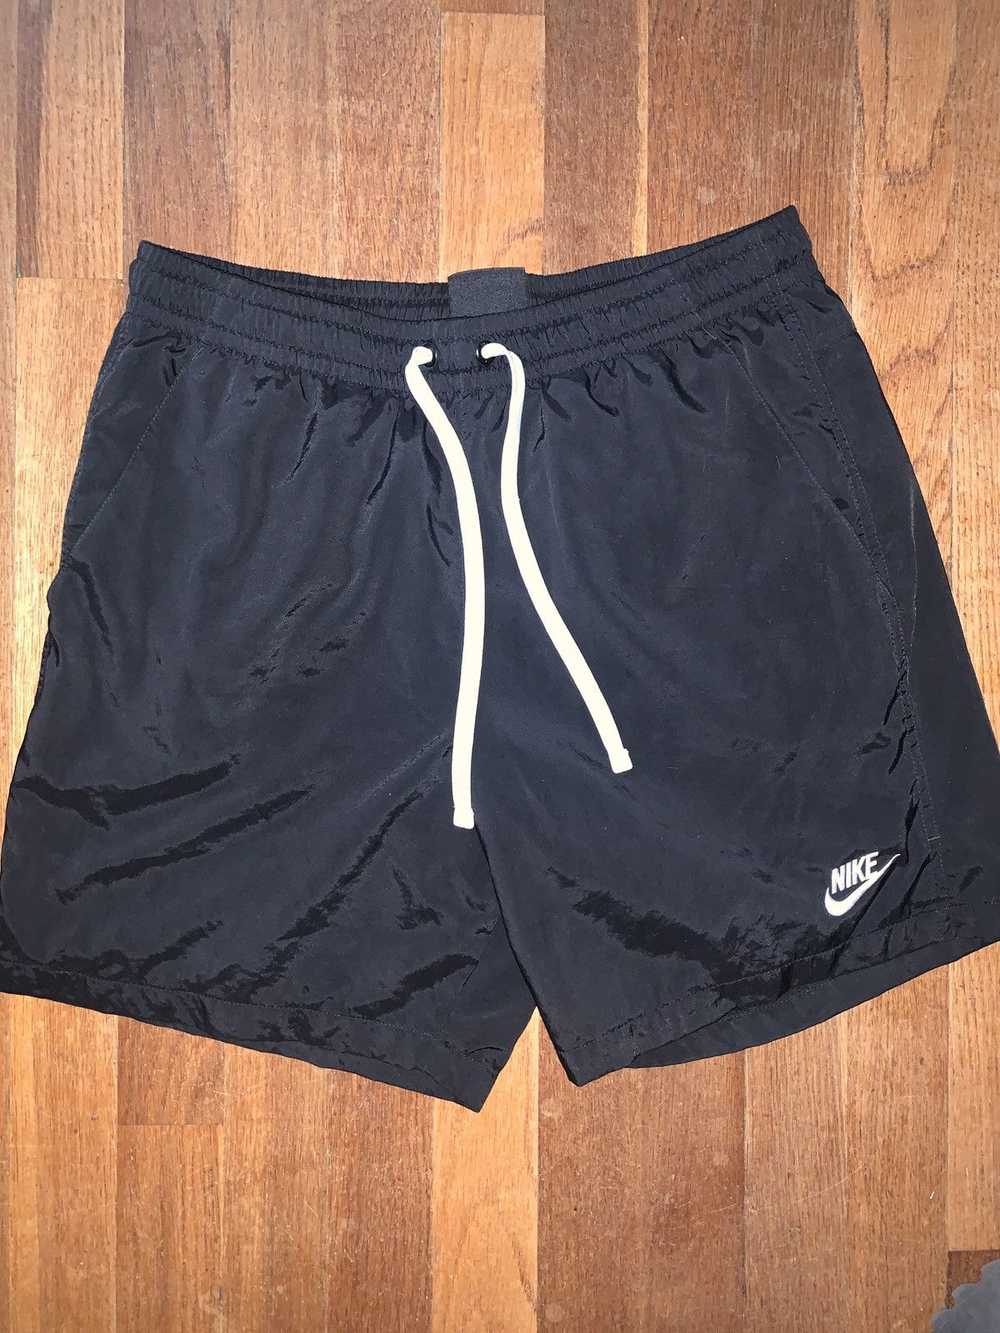 Nike nike woven shorts - image 1